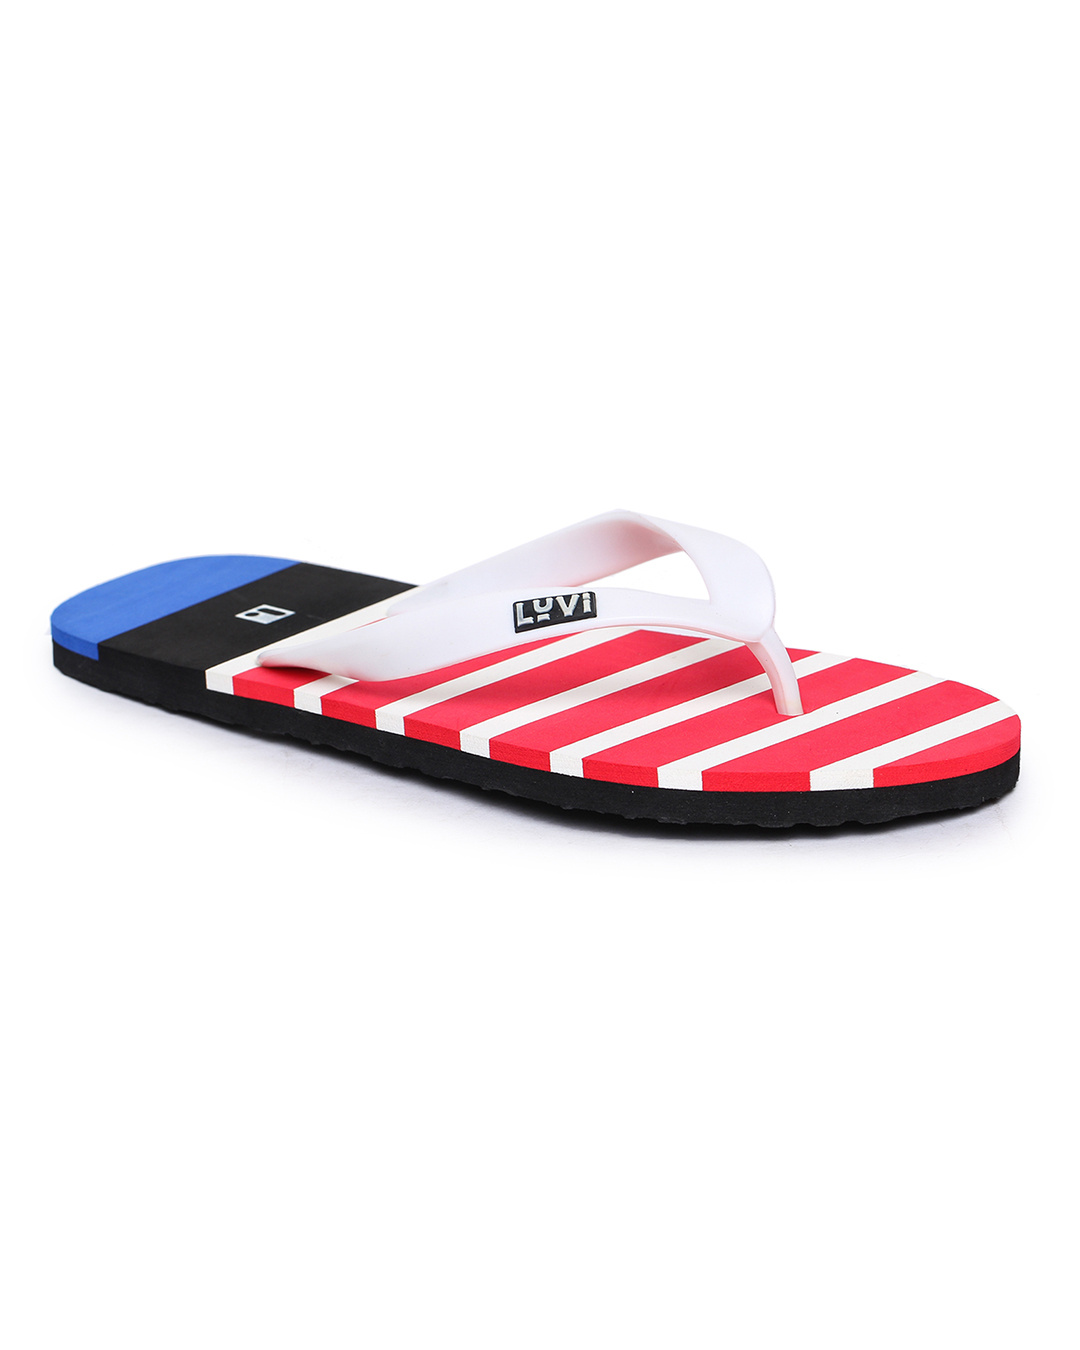 Buy Men's Red Slip-On Regular Slippers & Flip Flops Online in India at ...